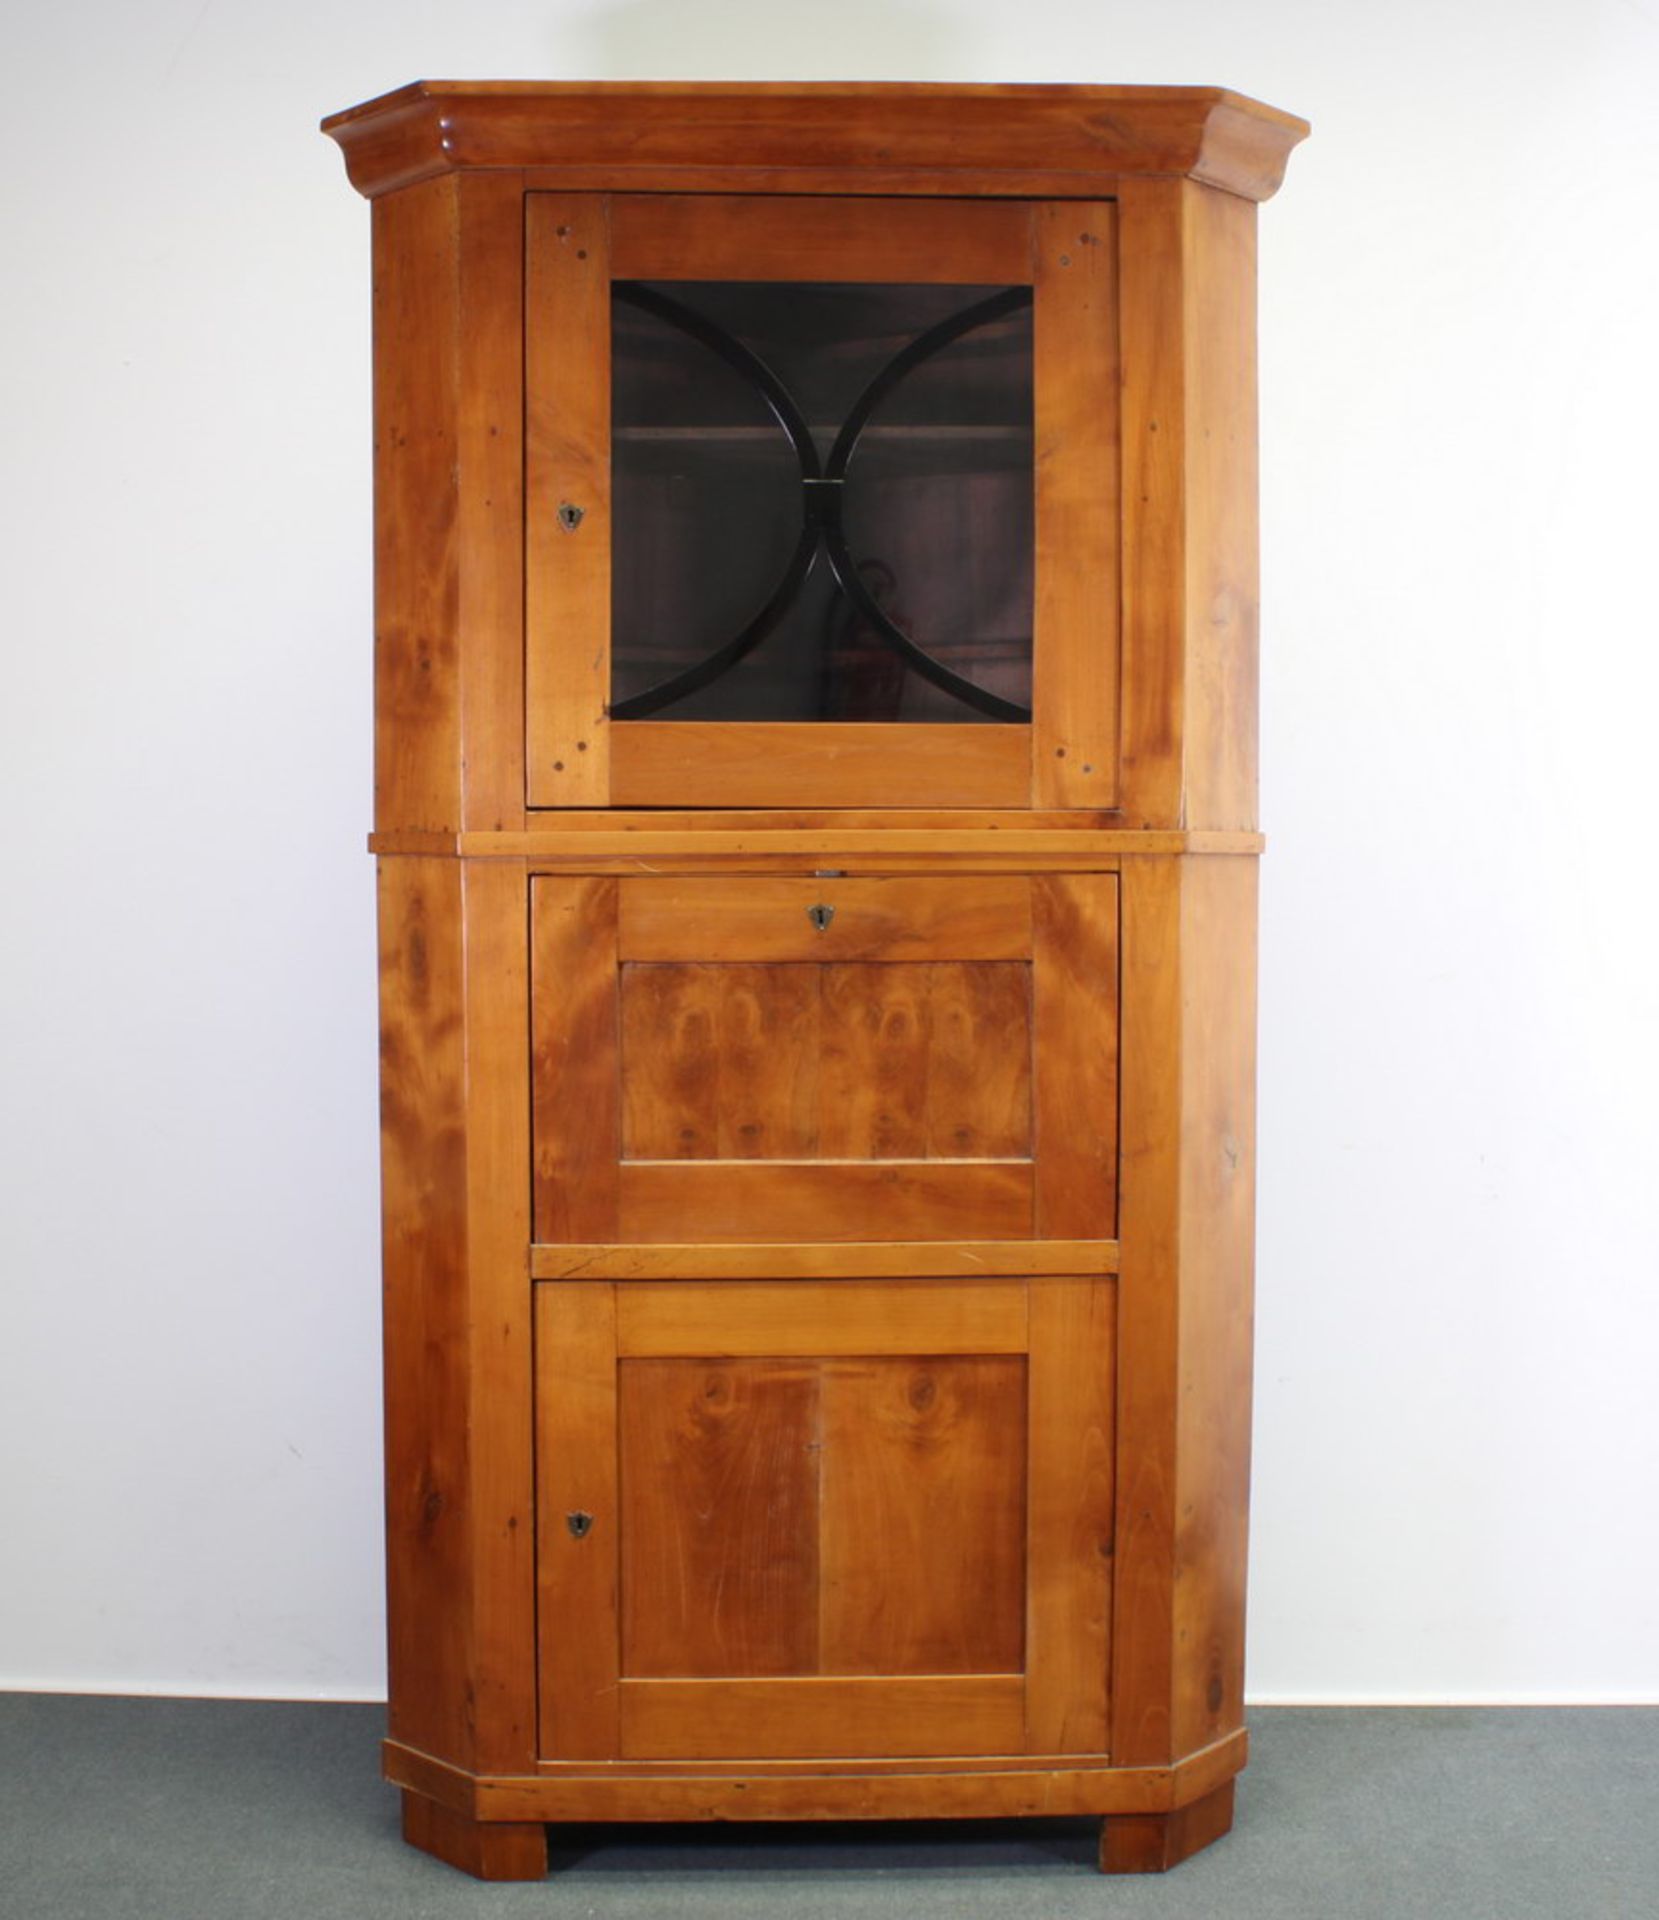 Ecksekretär, Biedermeier, um 1825, Kirschbaum, unten eine geschlossene Tür, darüber Klappfach, innen